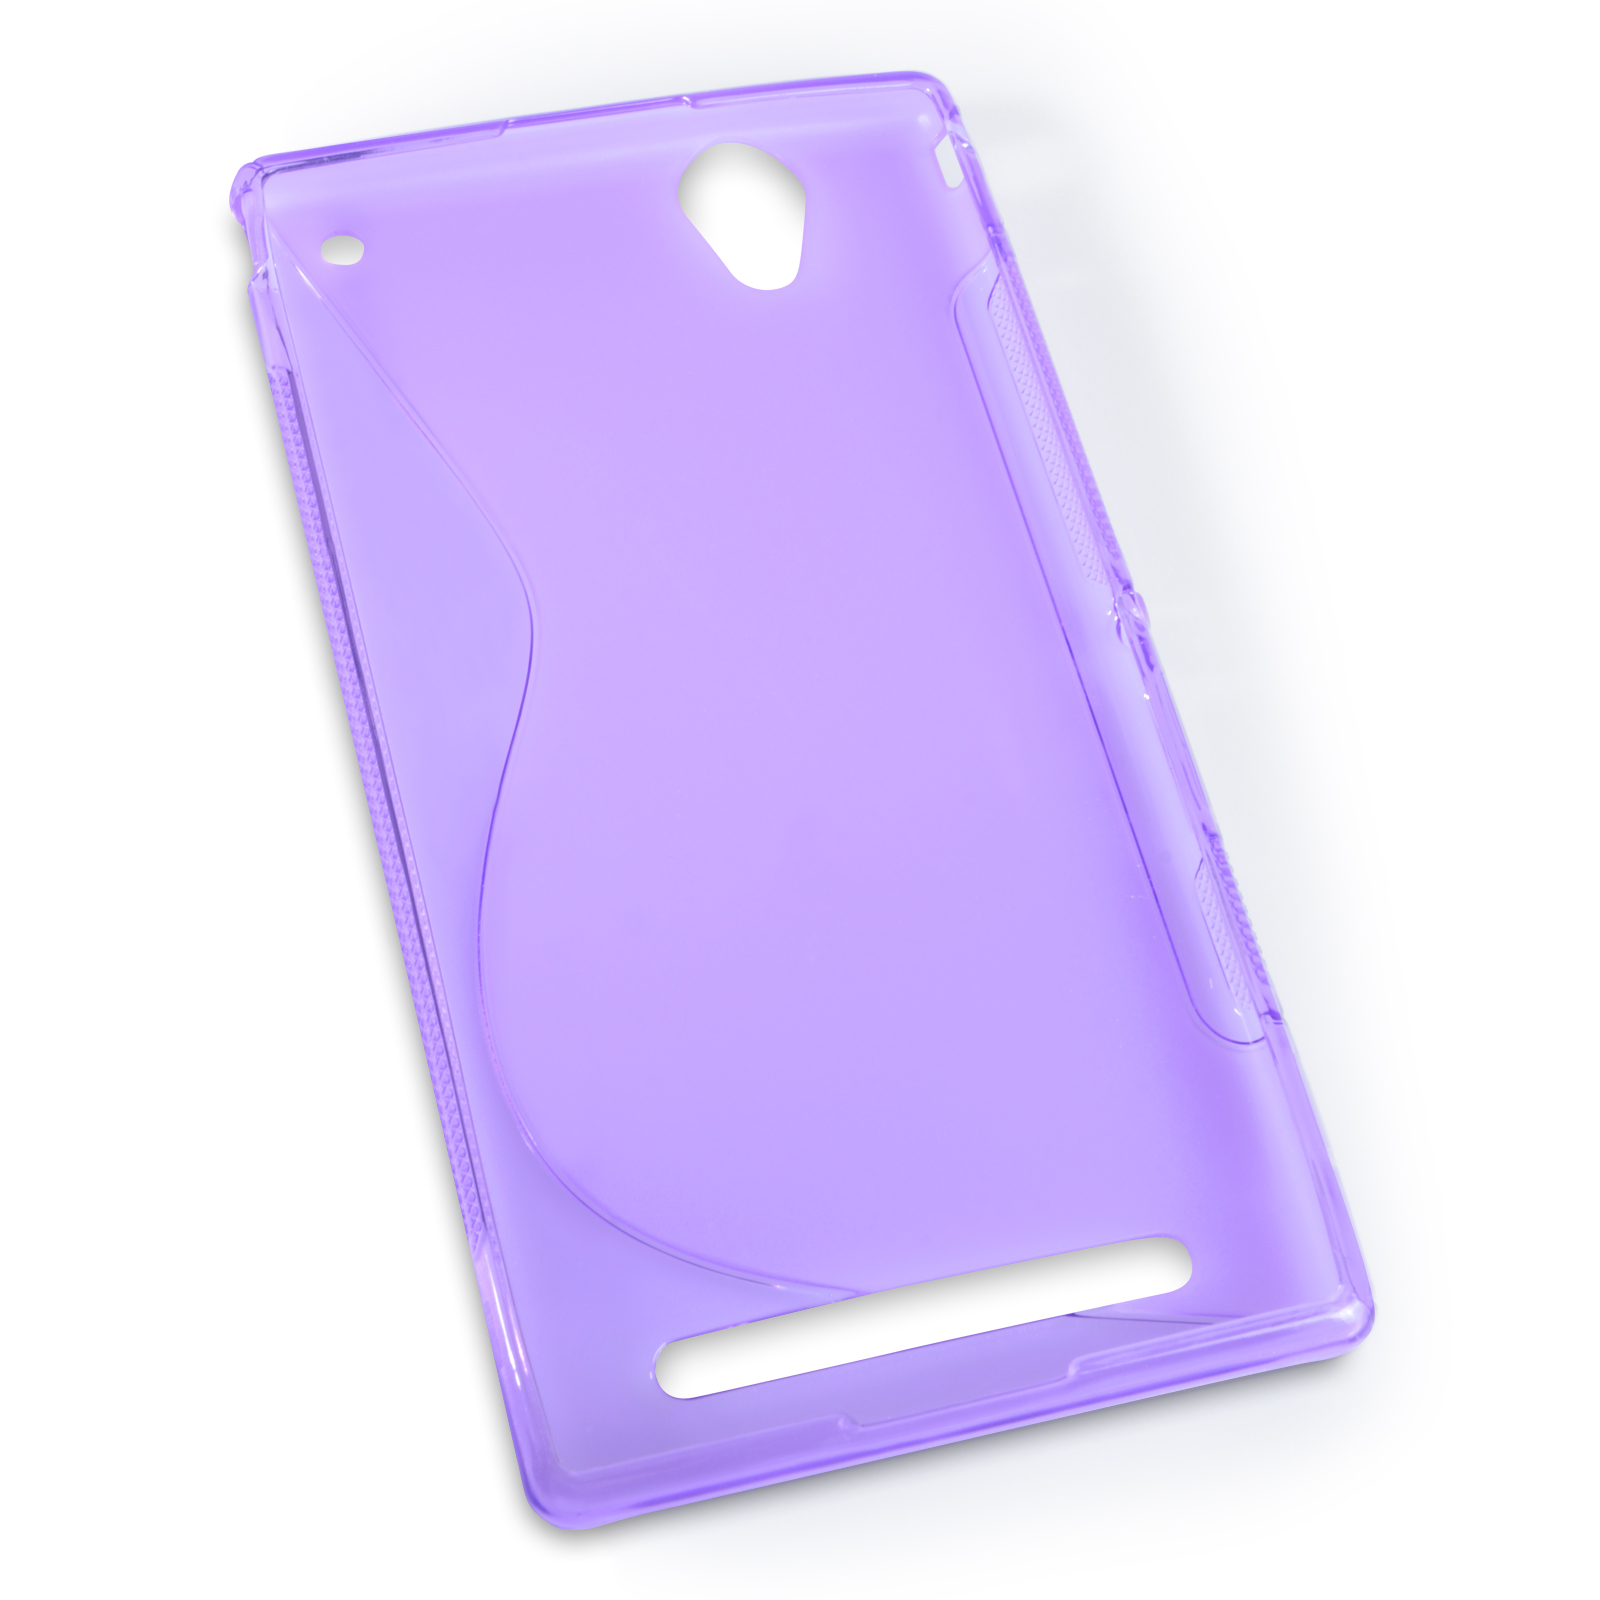 Caseflex Sony Xperia T2 Ultra Silicone Gel S-Line Case - Purple